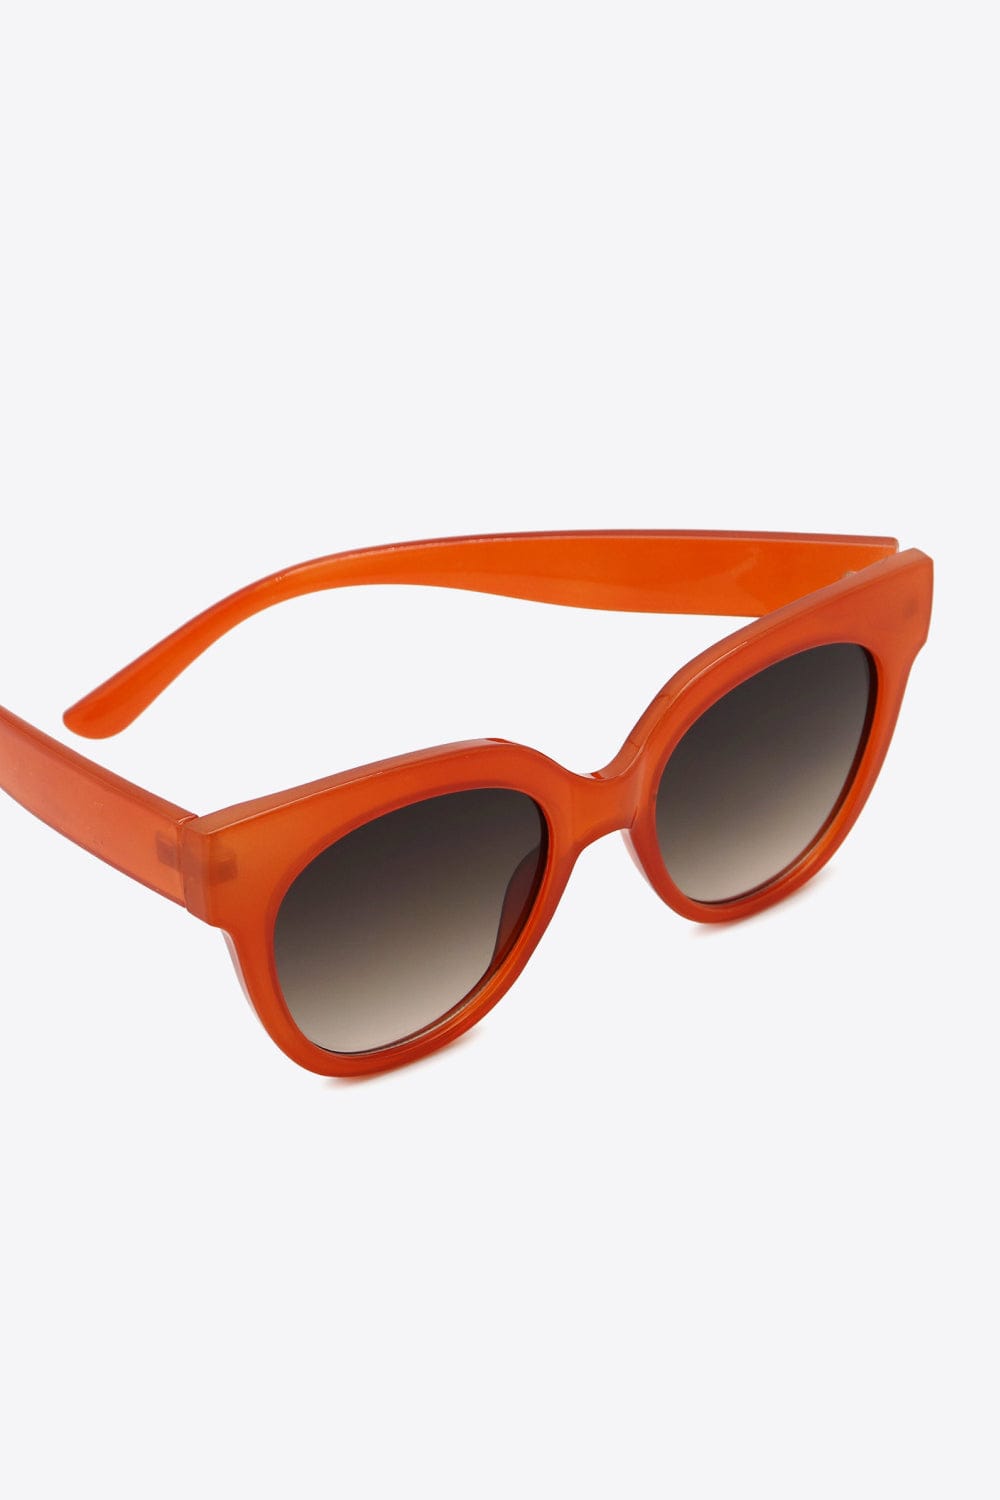 UV400 Polycarbonate Round Sunglasses - Body By J'ne